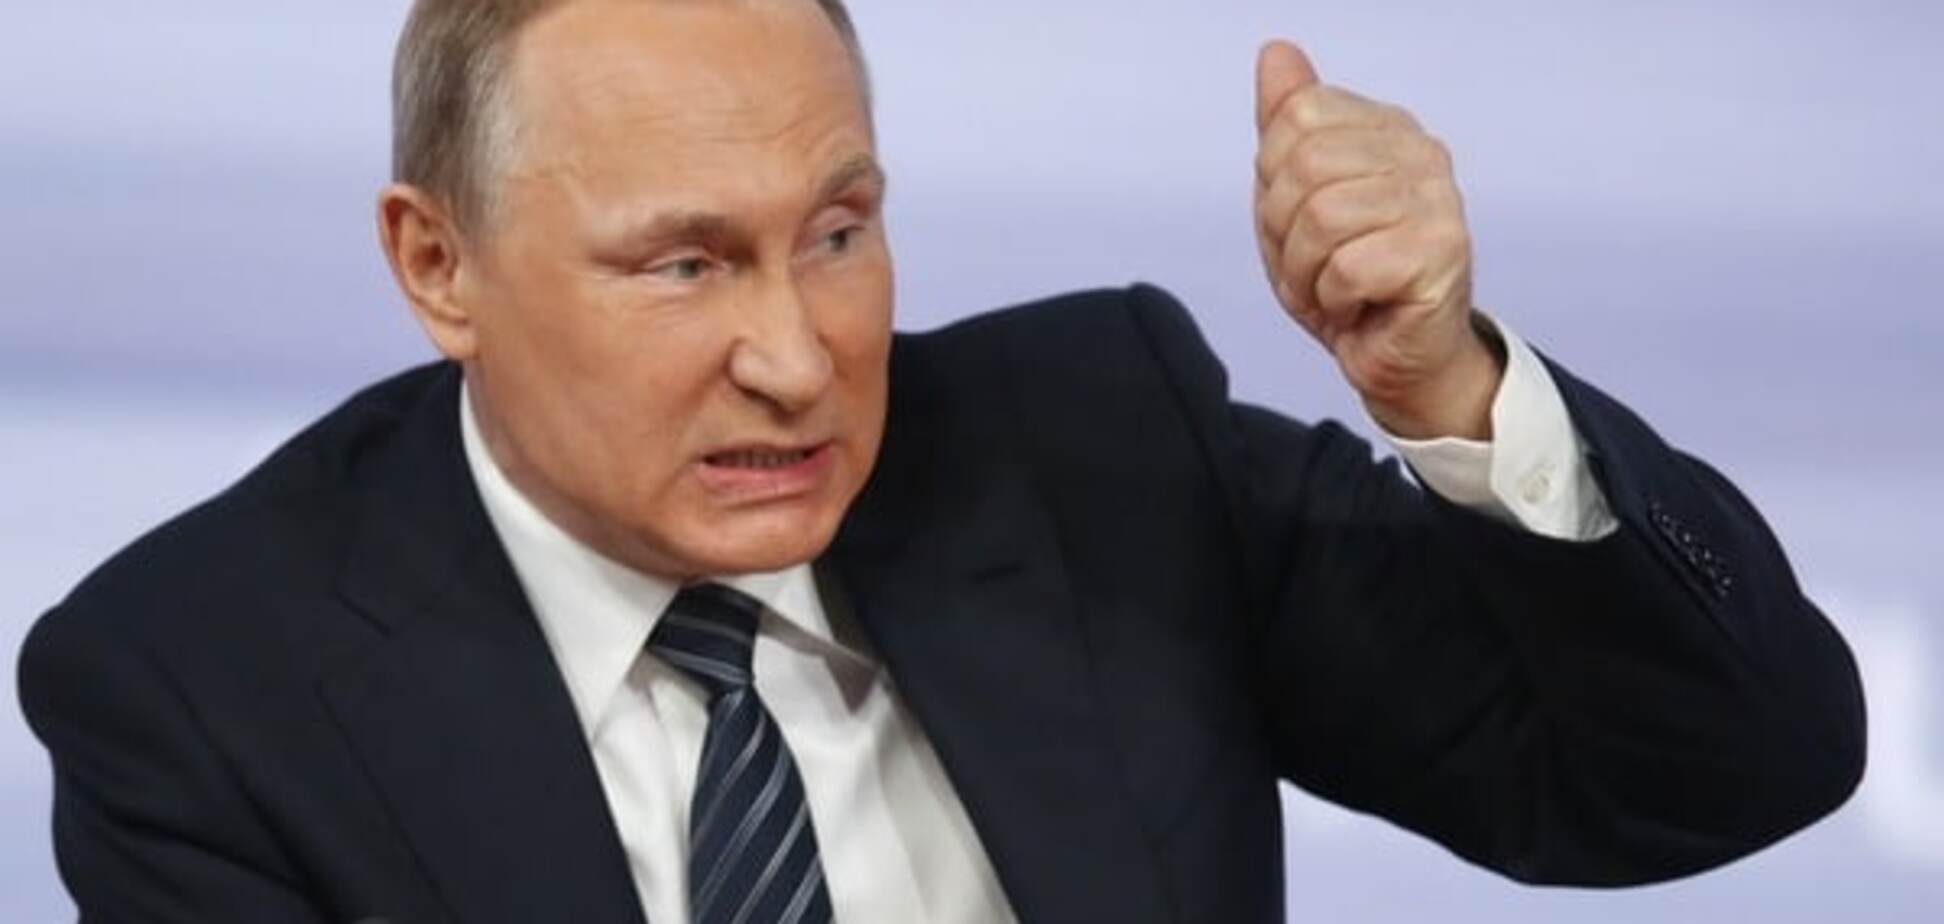 О россиянах на Донбассе и 'поработителях' Украины: ключевые заявления Путина на пресс-конференции